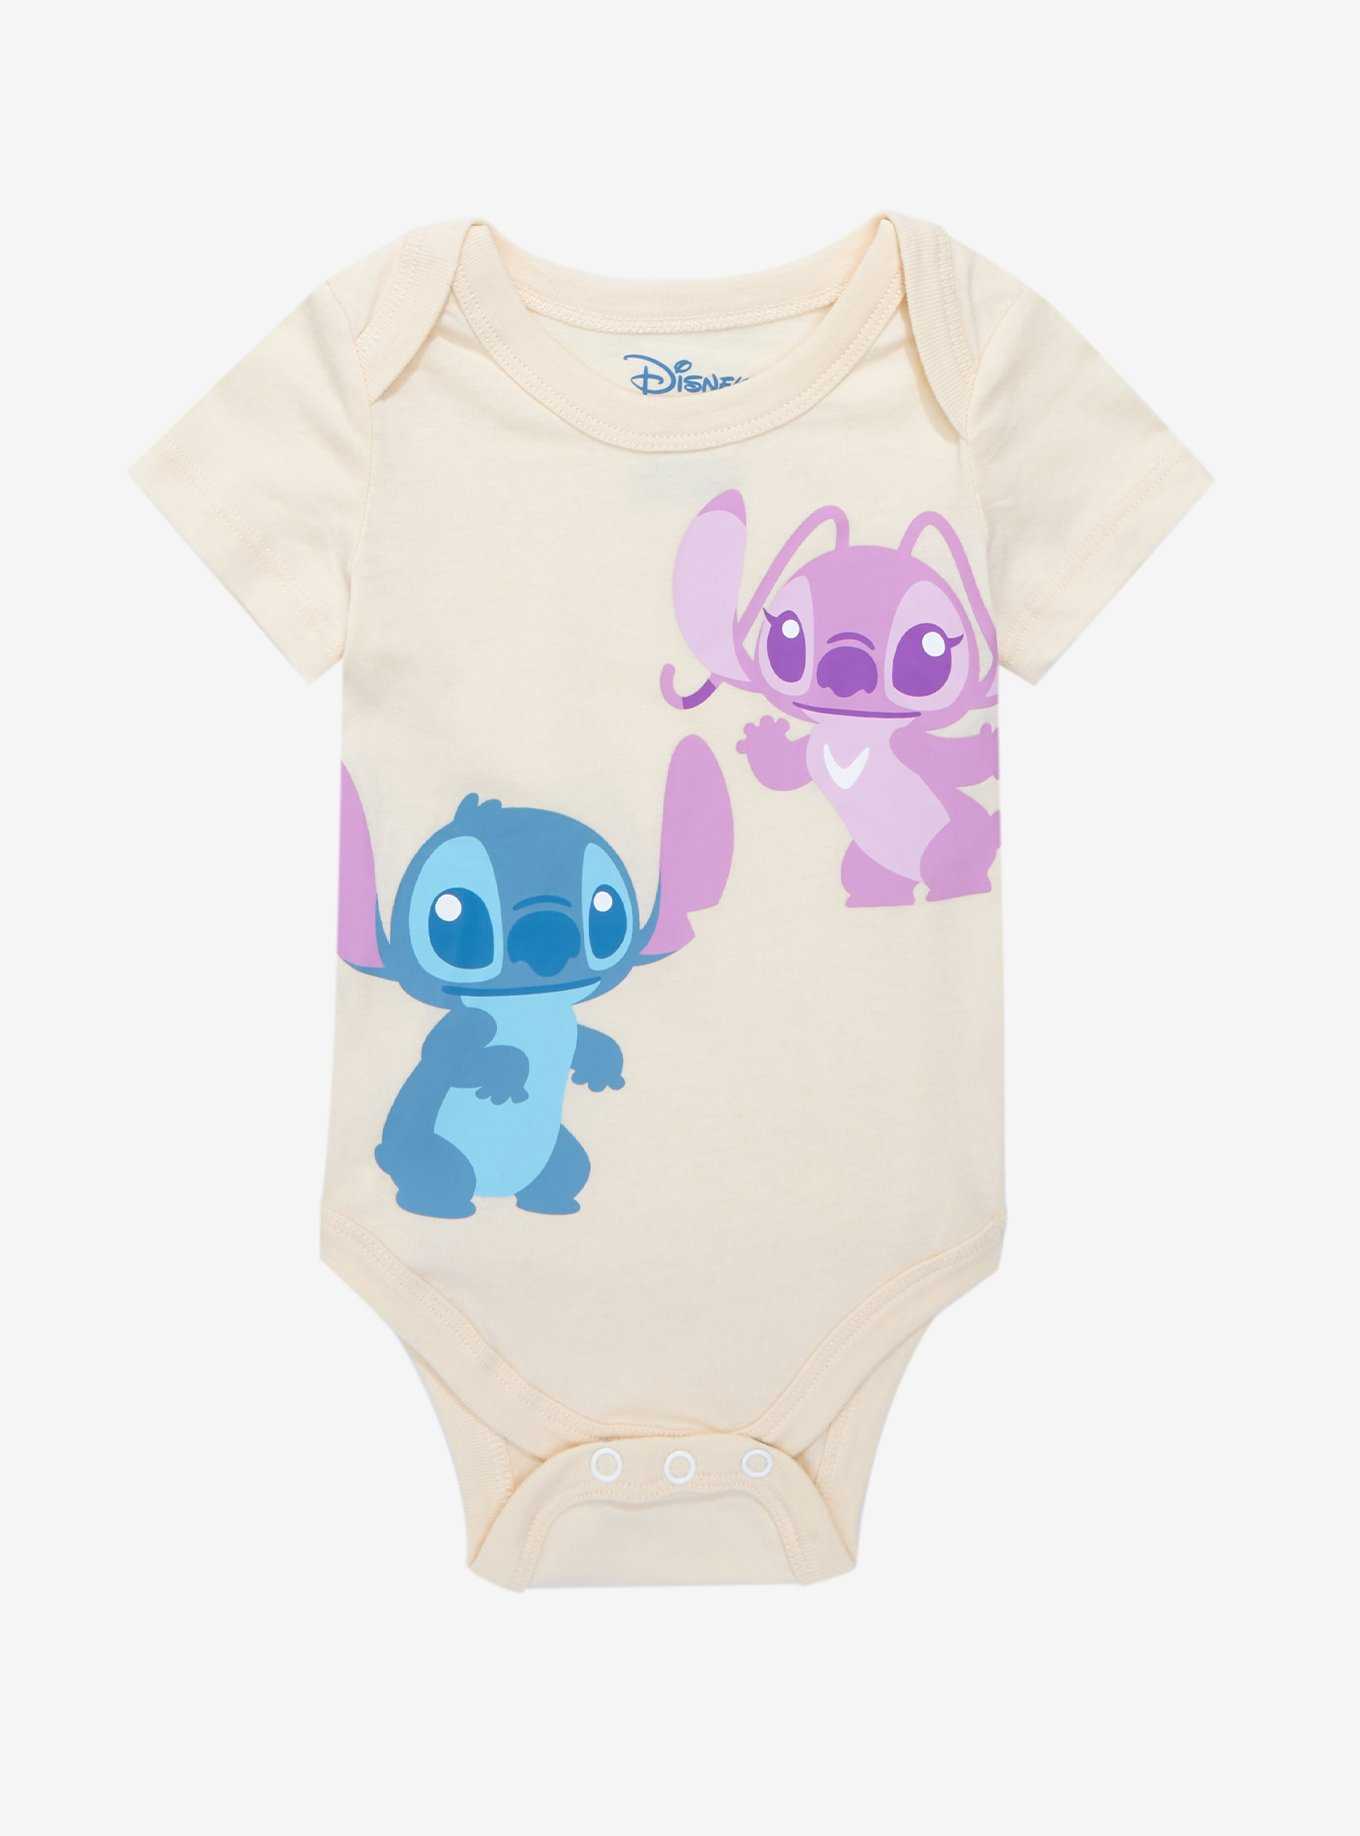 Disney Lilo & Stitch Lilo Replica Toddler Dress - BoxLunch Exclusive